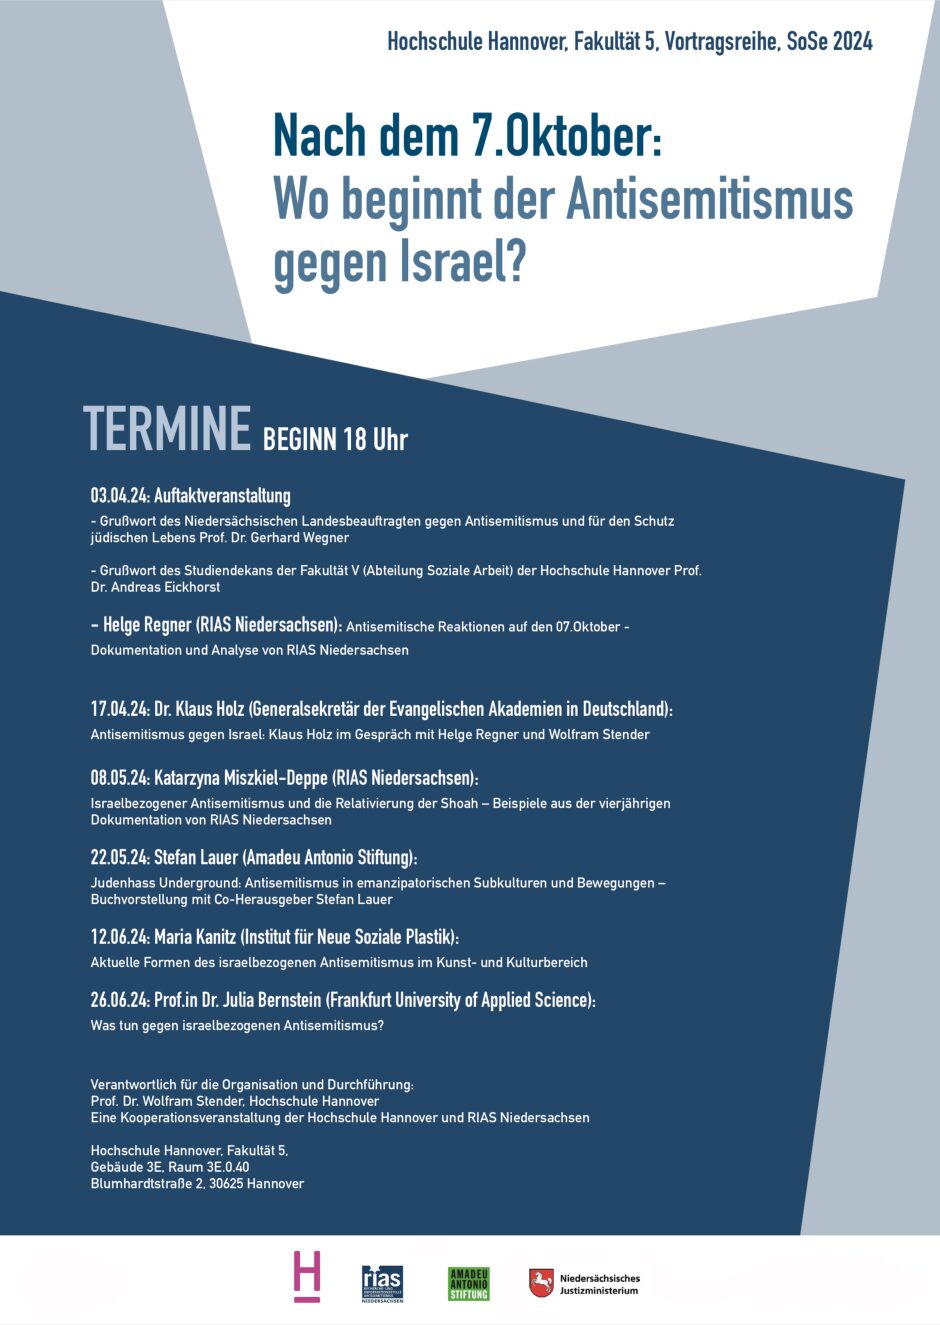 Antisemitismus gegen Israel: Klaus Holz im Gespräch mit Helge Regner und Wolfram Stender